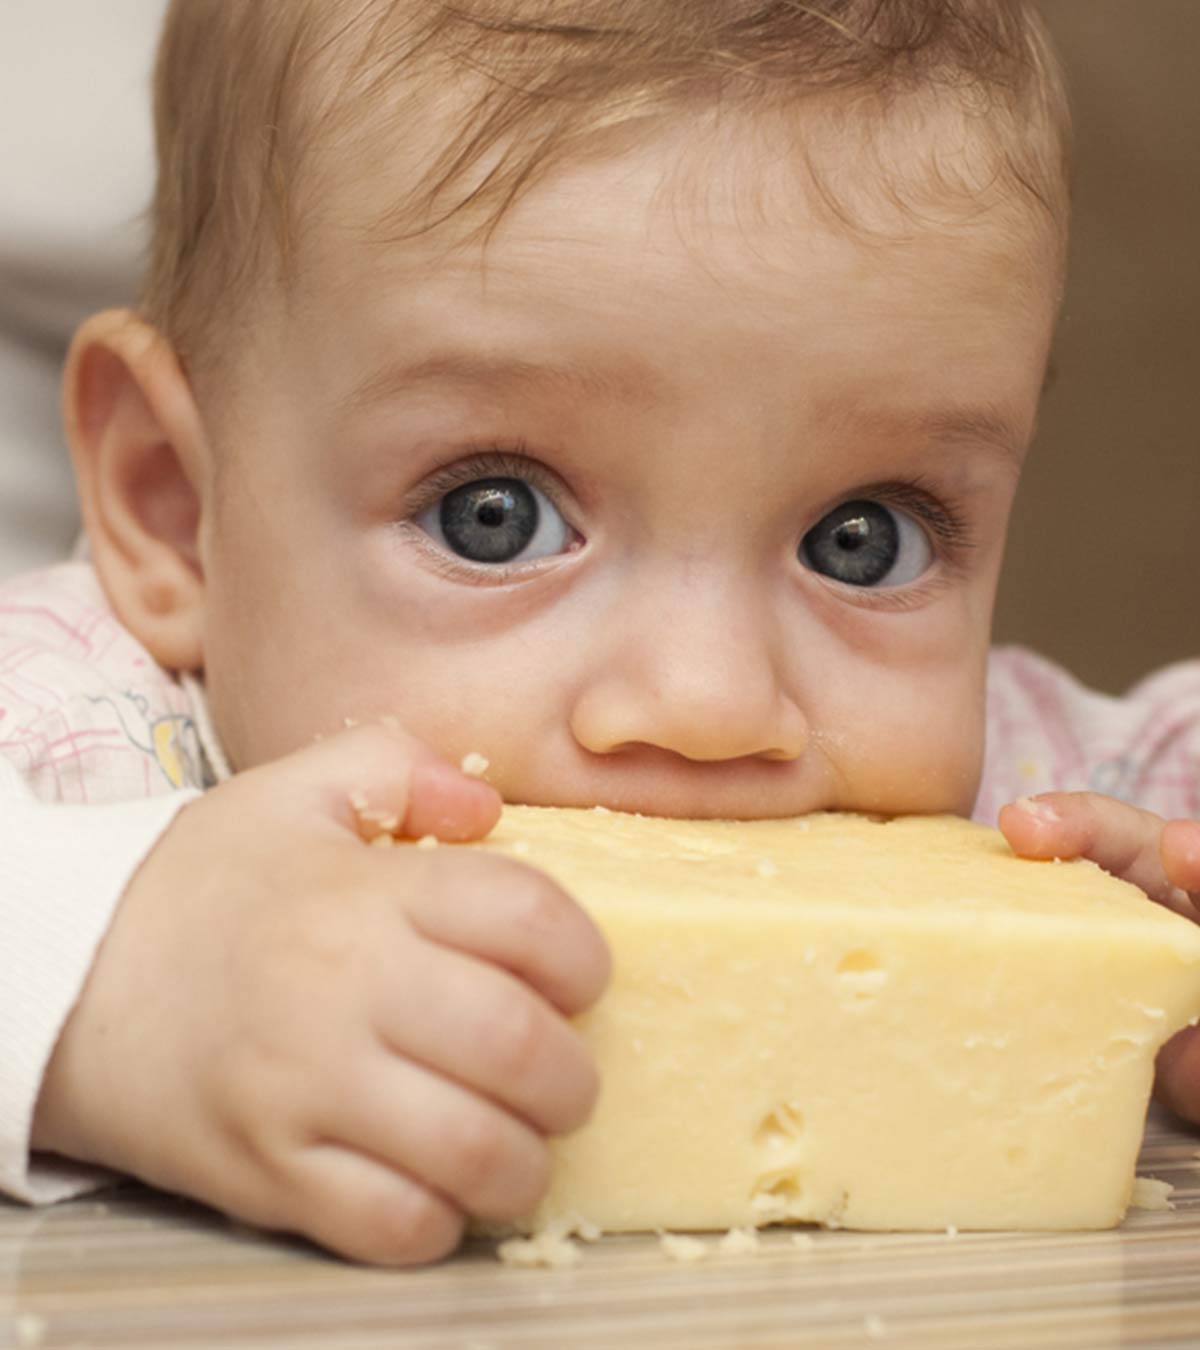 给婴儿的奶酪:何时介绍，好处和食谱